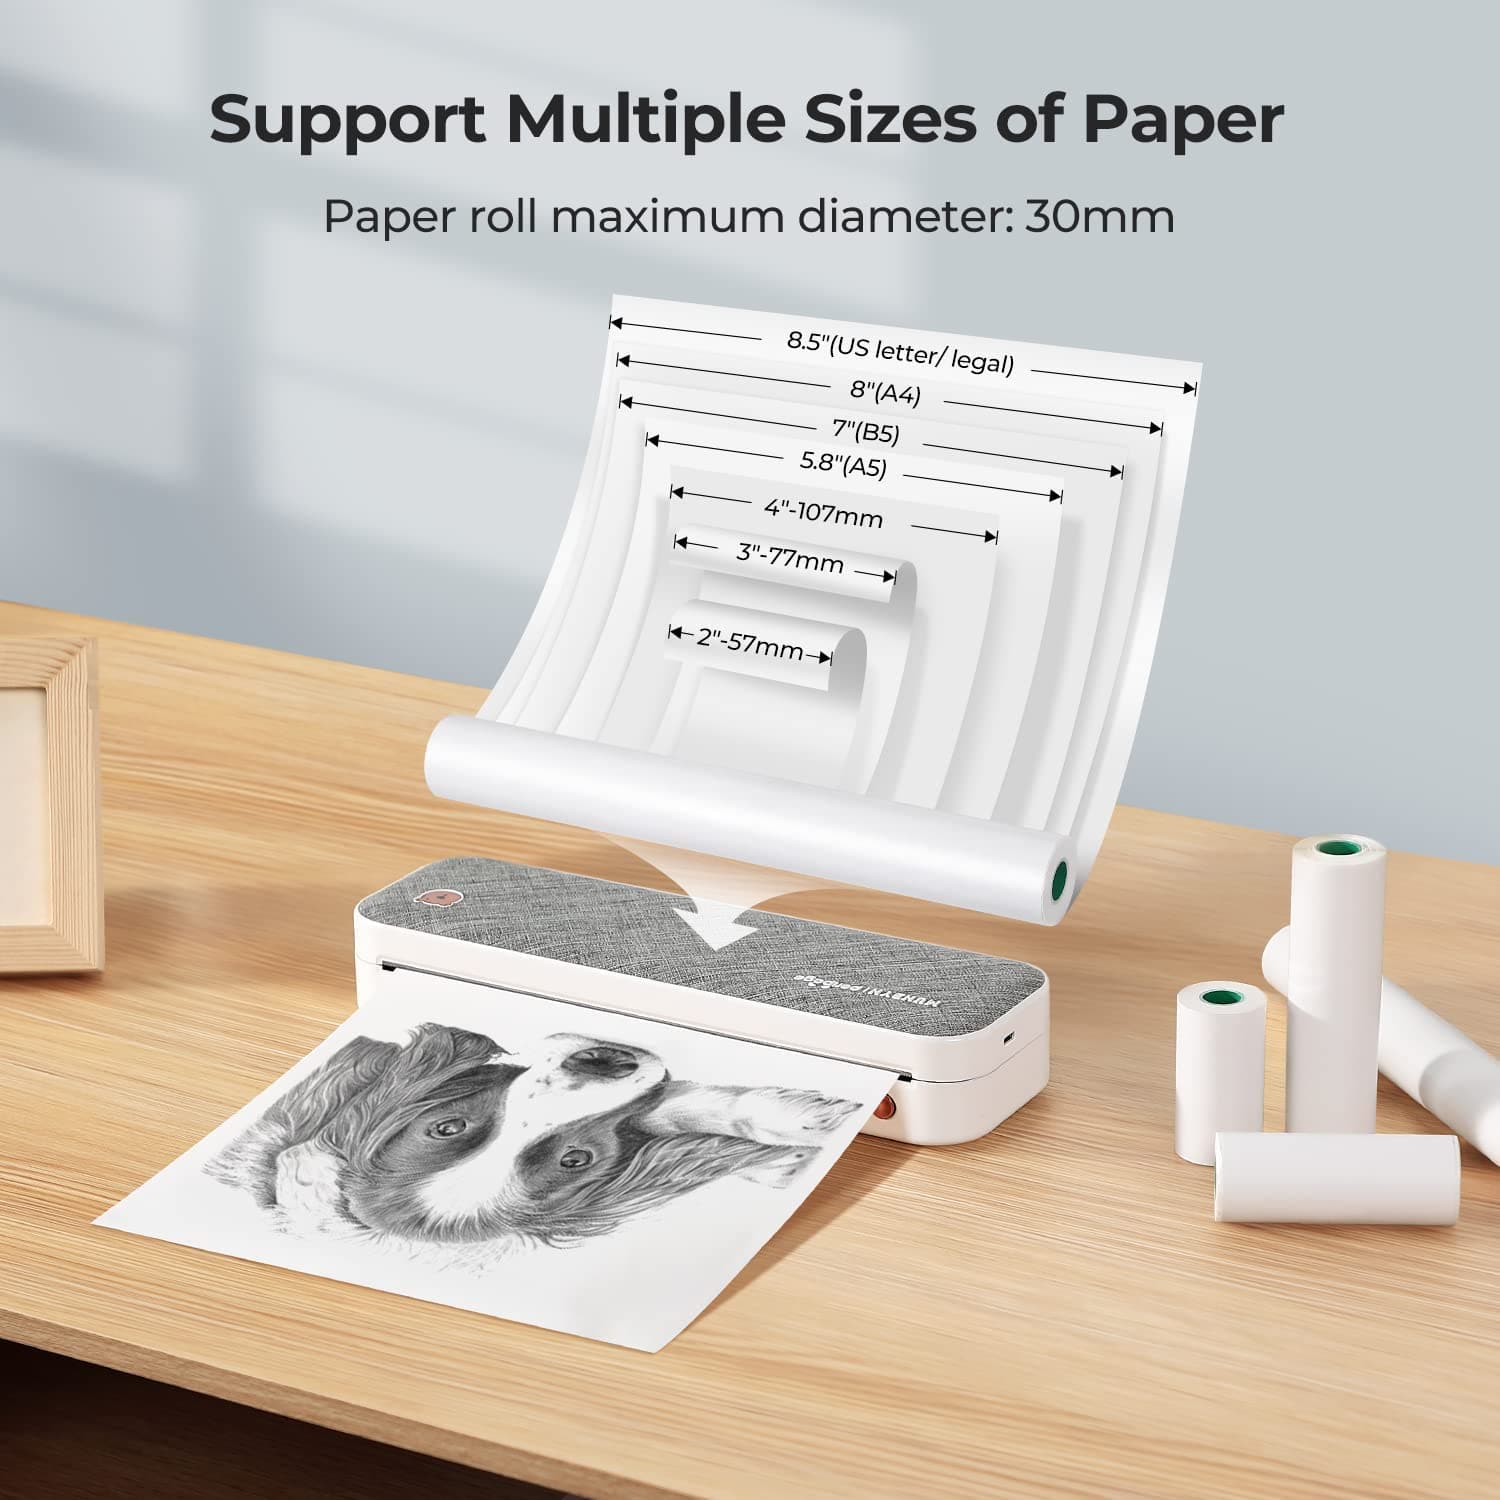 Printer Paper - Printer Paper